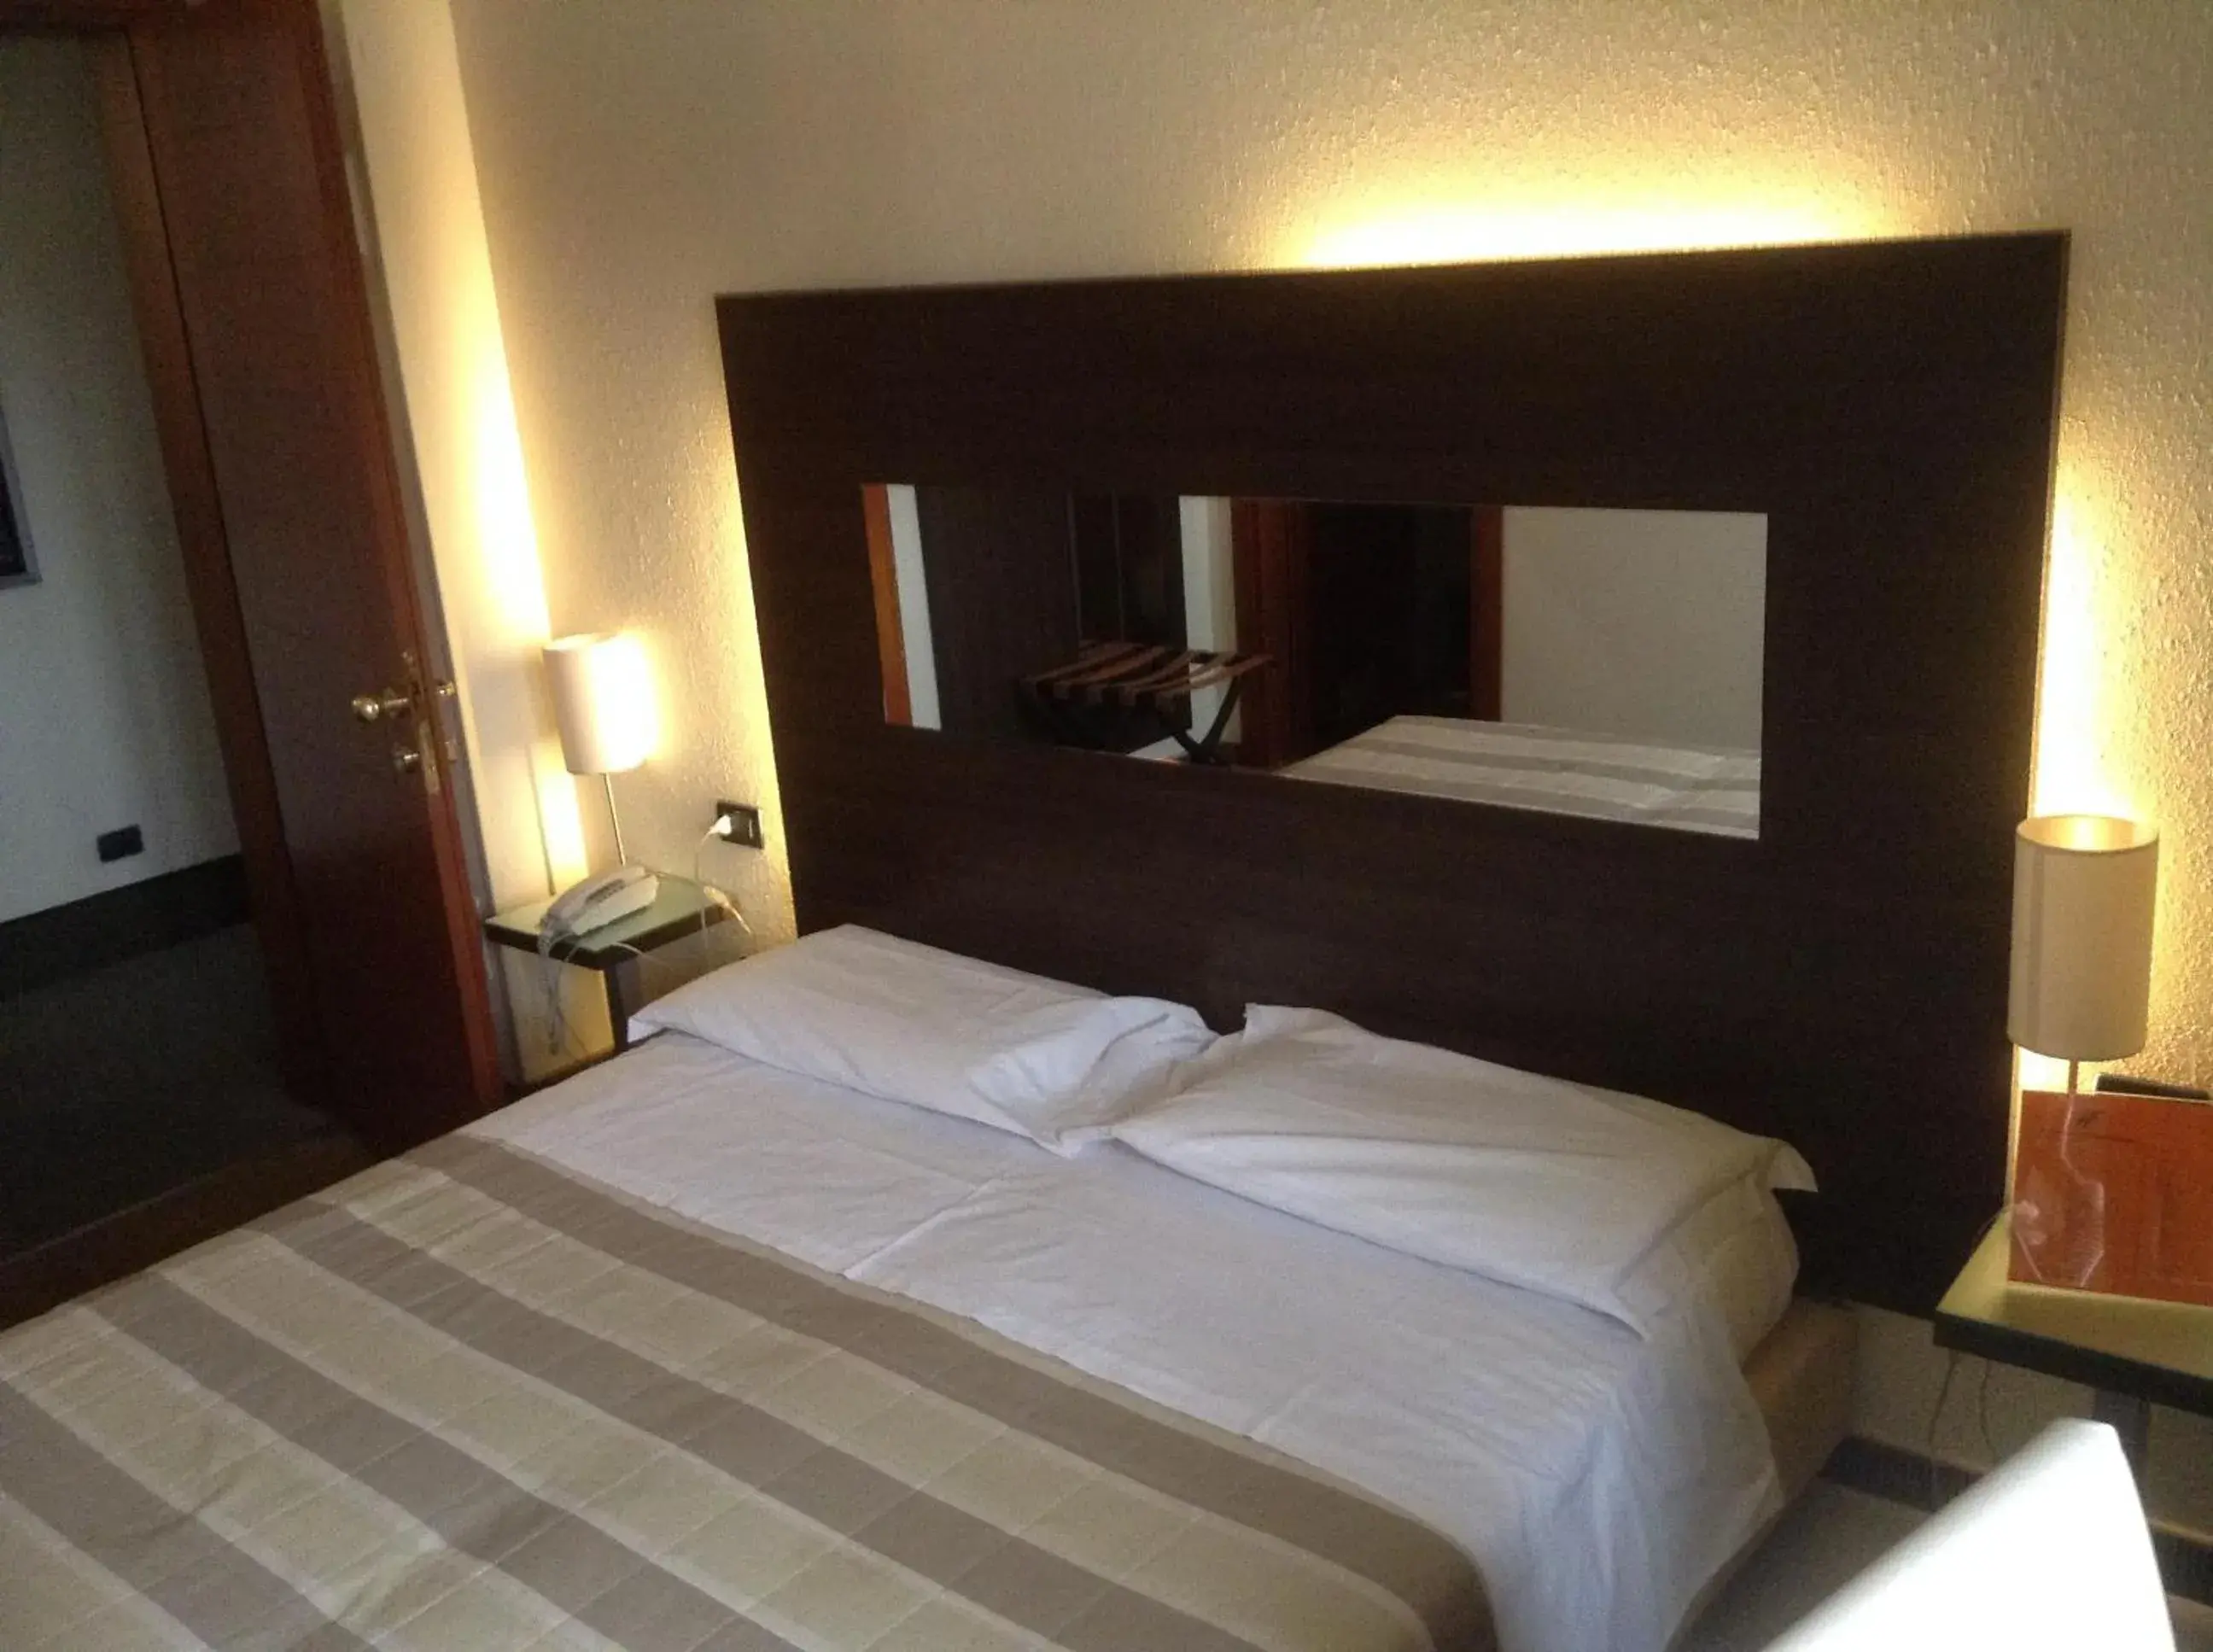 Double Room in Hotel Fiera Wellness & Spa